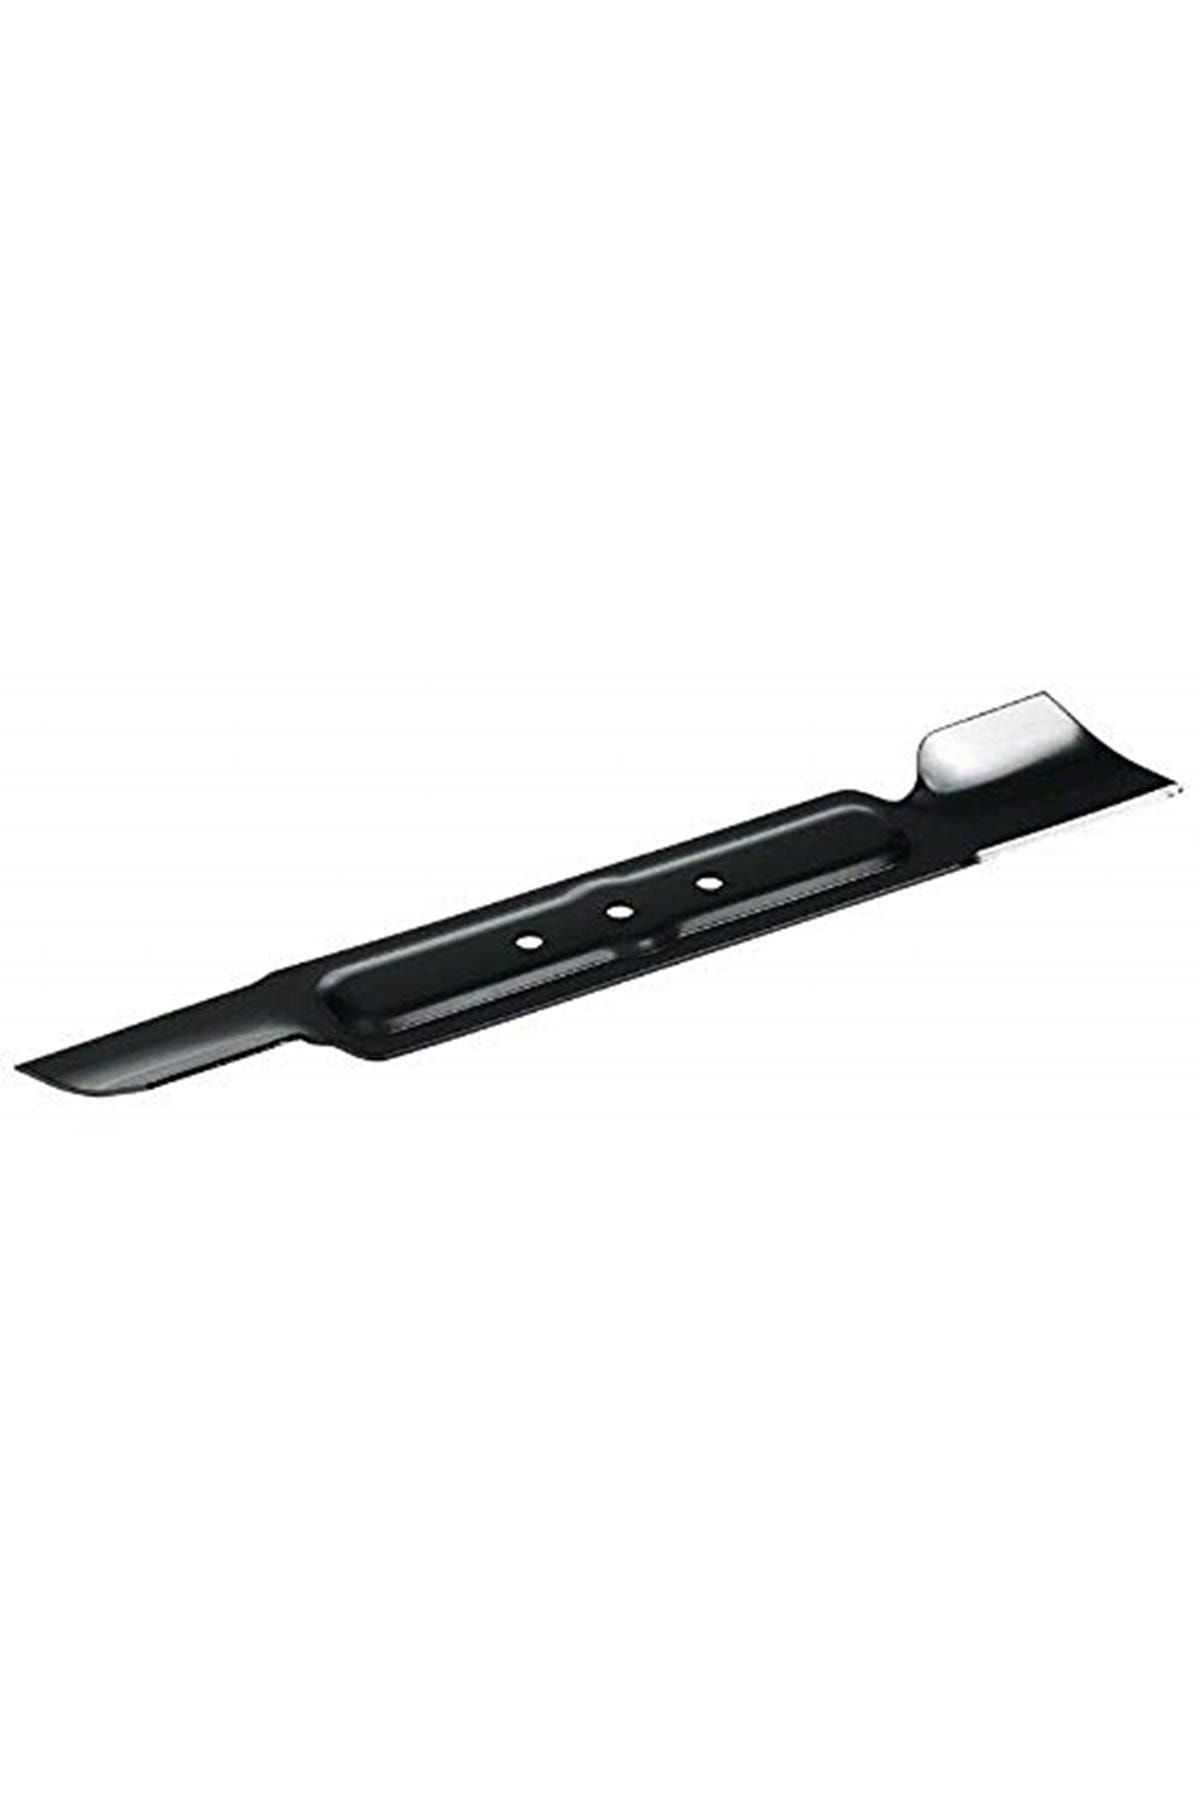 Bosch Marka: Arm 34 Yedek Bıçak, 34 Cm Kategori: Yedek Bıçaklar